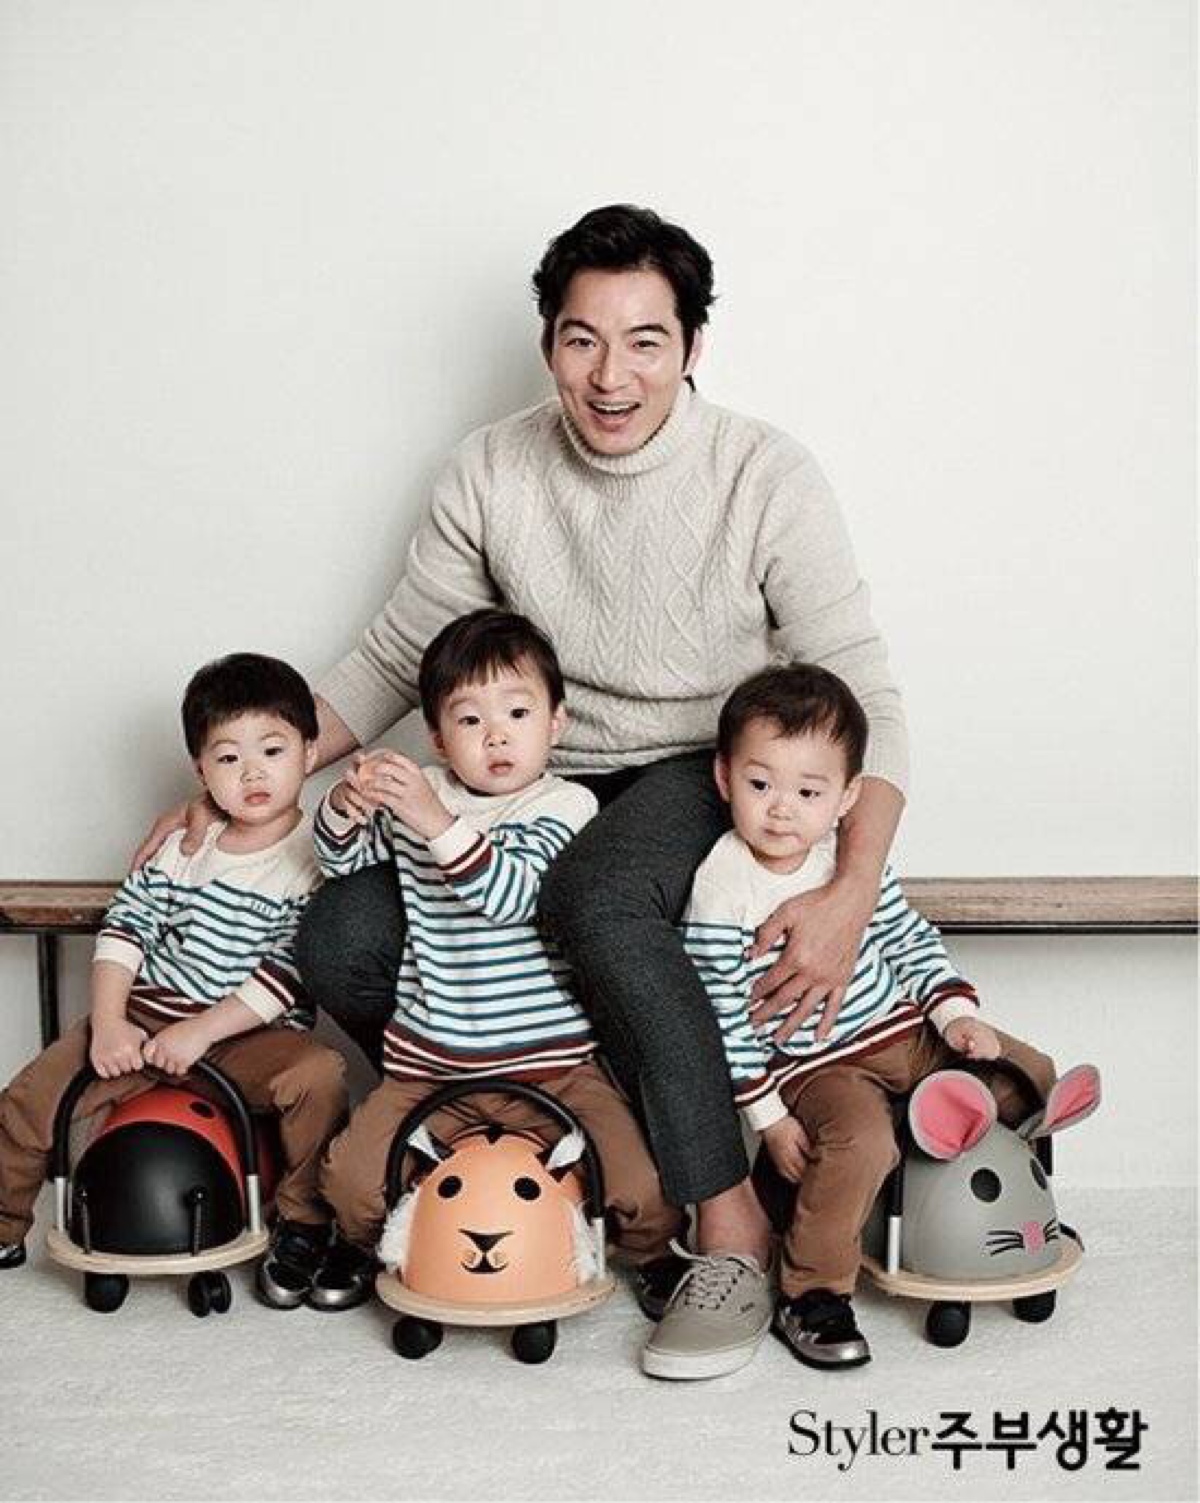 宋一国带着三胞胎儿子大韩,民国,万岁三人参加#超人回来了# ,三胞胎真